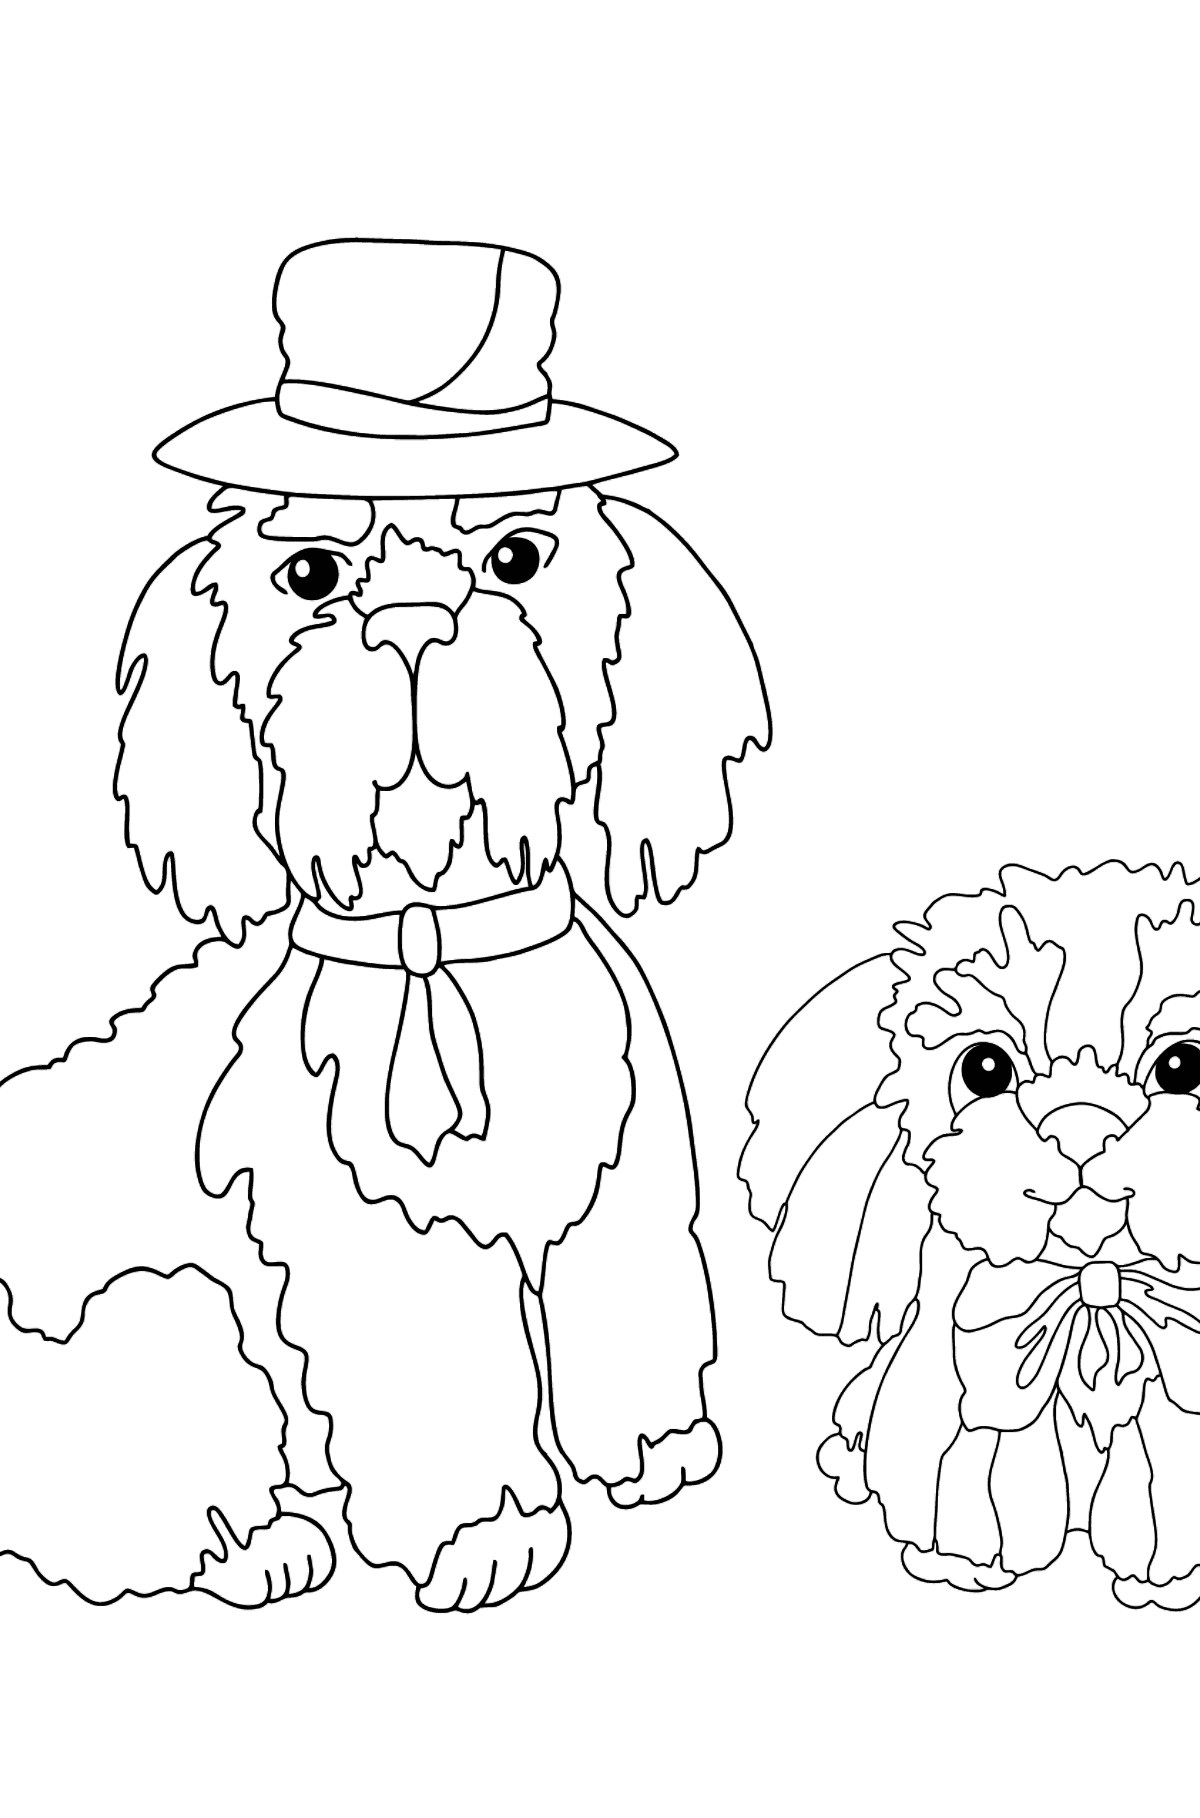 Boyama sayfası iyi köpekler (zor) - Boyamalar çocuklar için